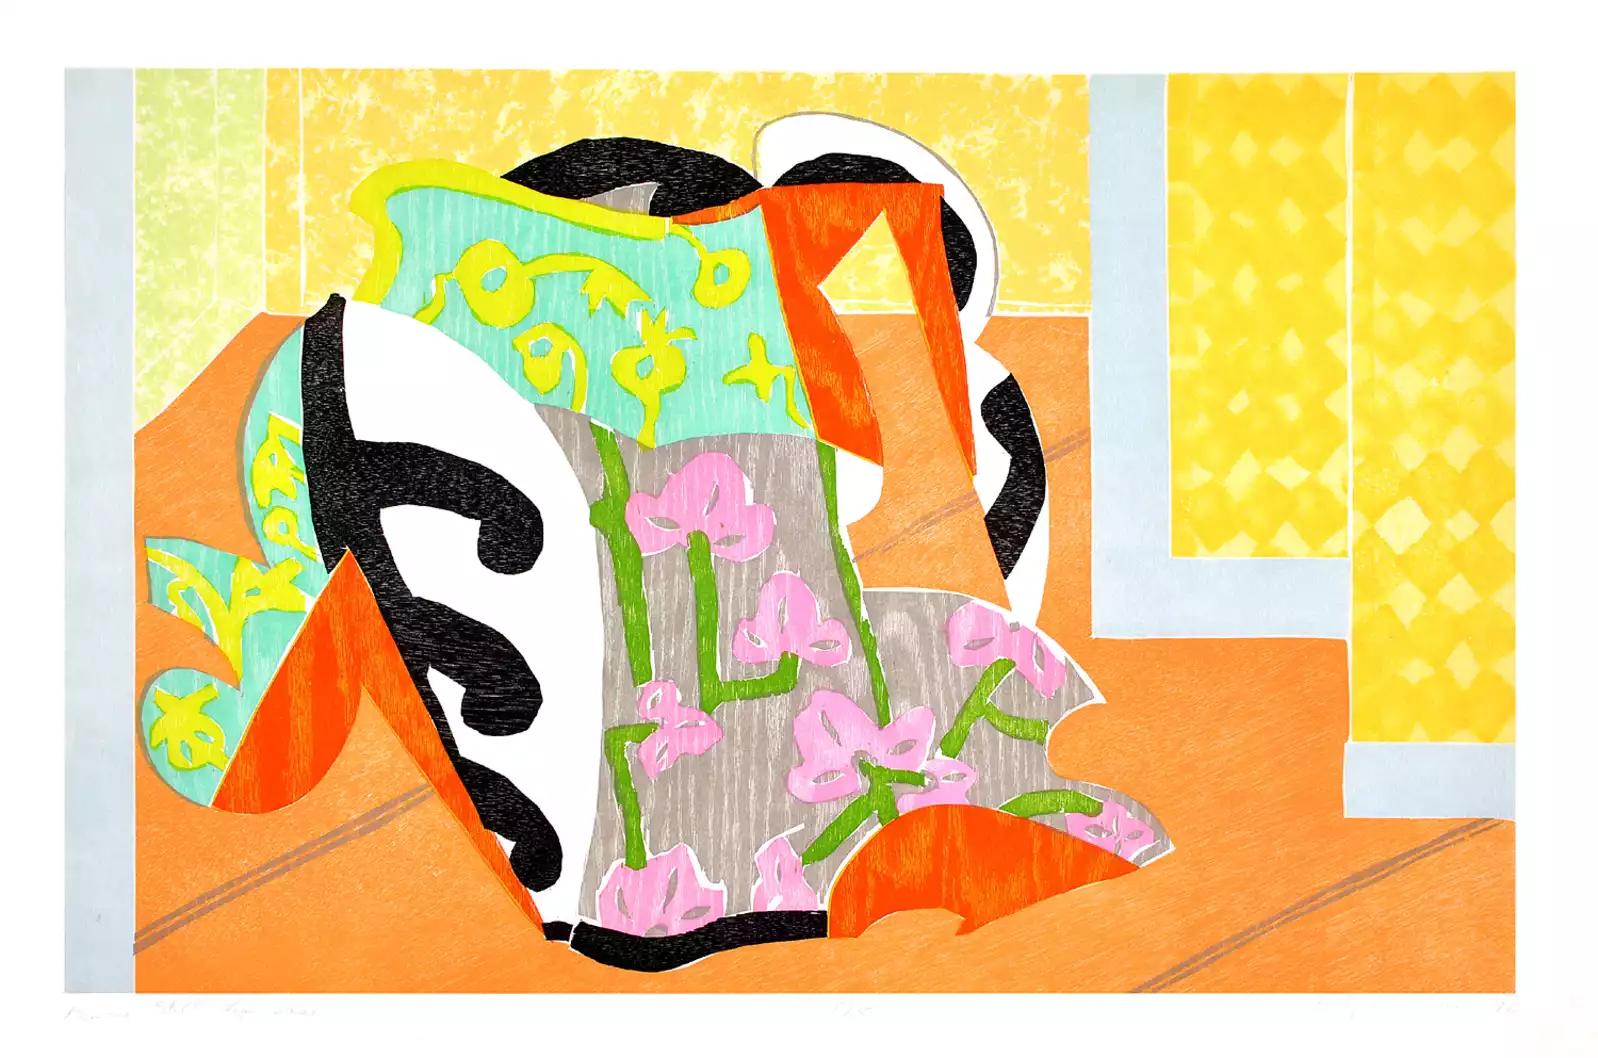 Kimono-Stillleben-Vase (INV# NP3630)
Betty Woodman 
Farbholzschnitt mit Chine Collé
27.5 x 41.5
1992
# W.P. 1/2, außerhalb der Auflage von 15
unterzeichnet